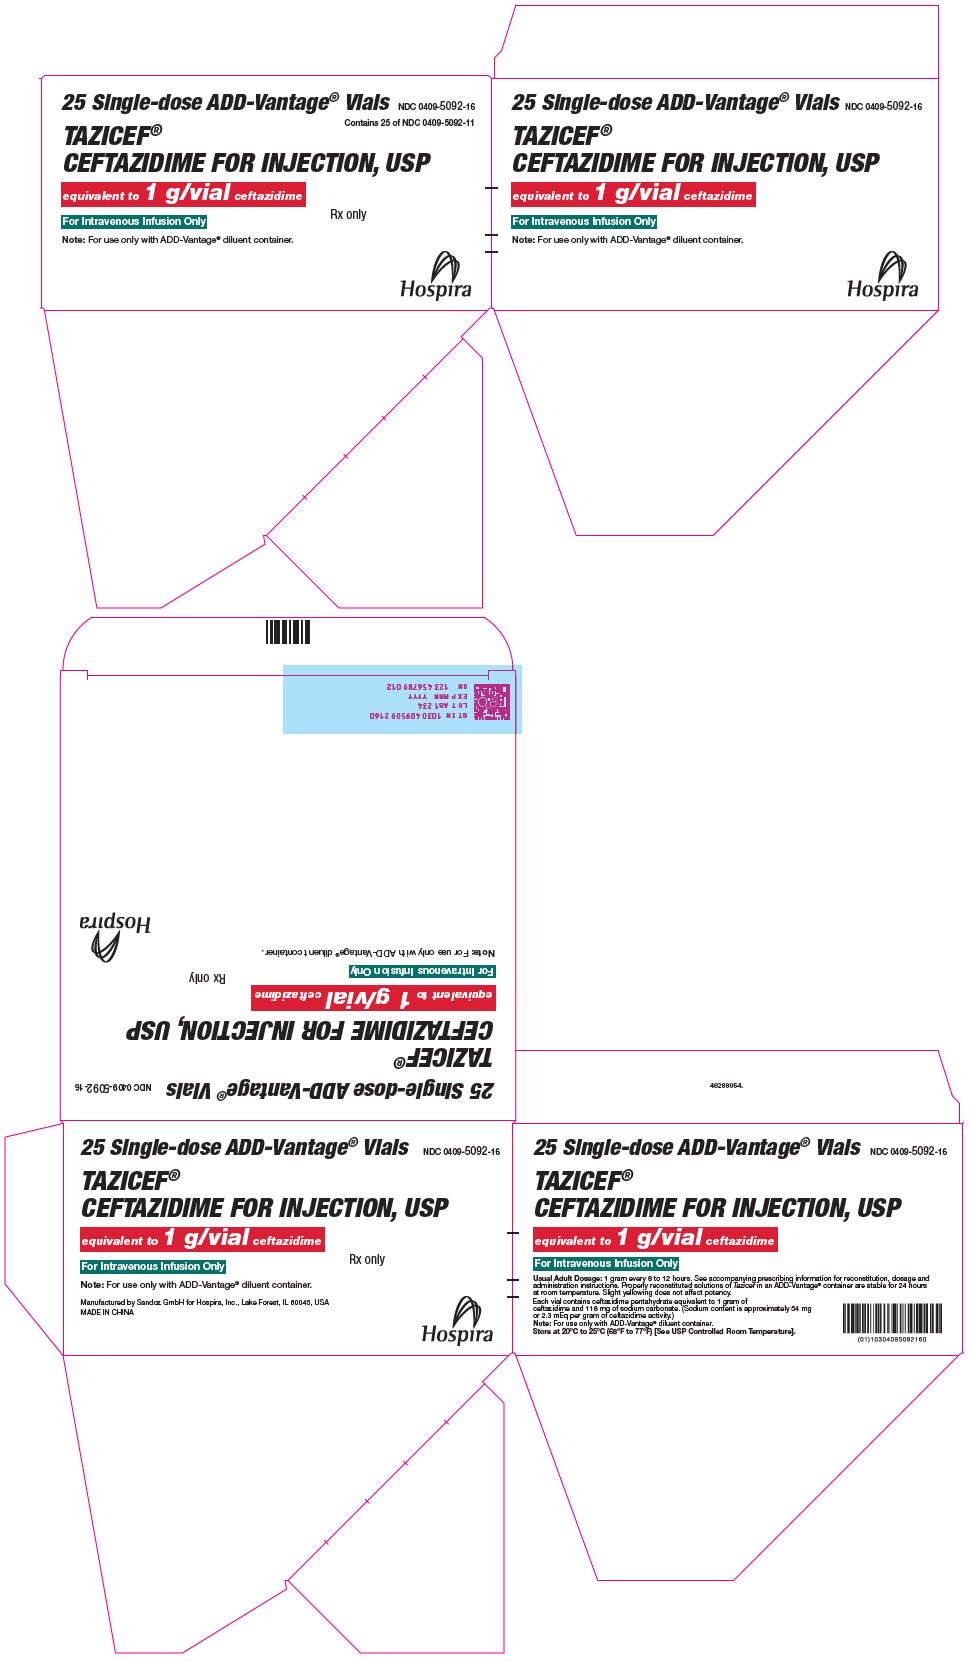 PRINCIPAL DISPLAY PANEL - 1 g Vial Carton